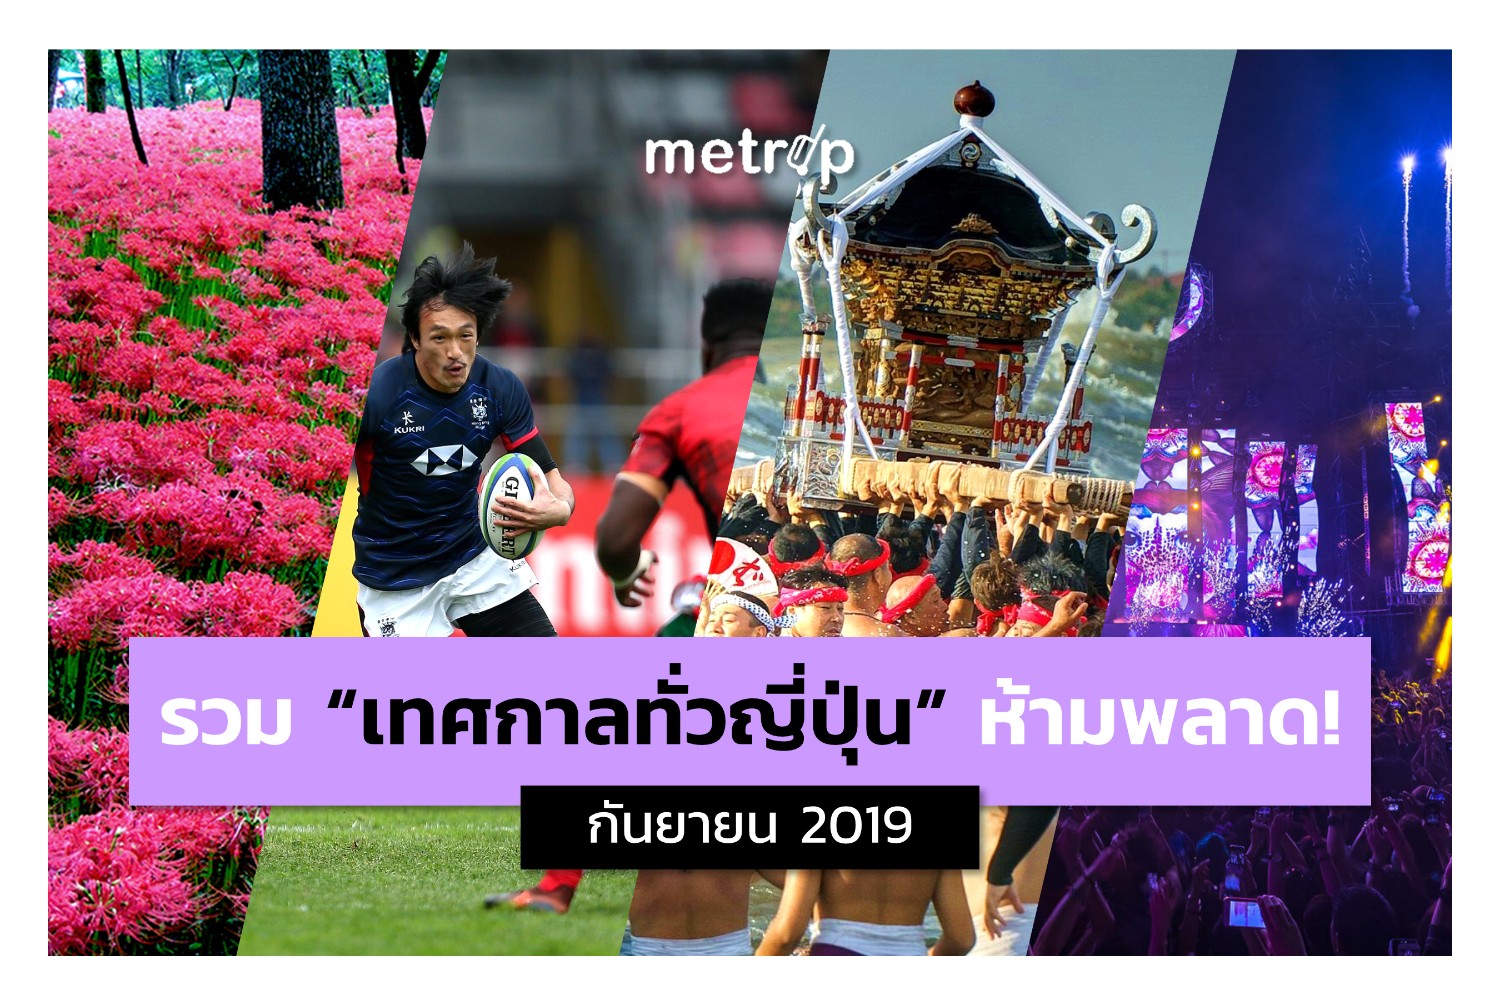 รวมเทศกาล/งานอีเวนท์น่าไปในญี่ปุ่น (กันยายน 2019) - Pantip